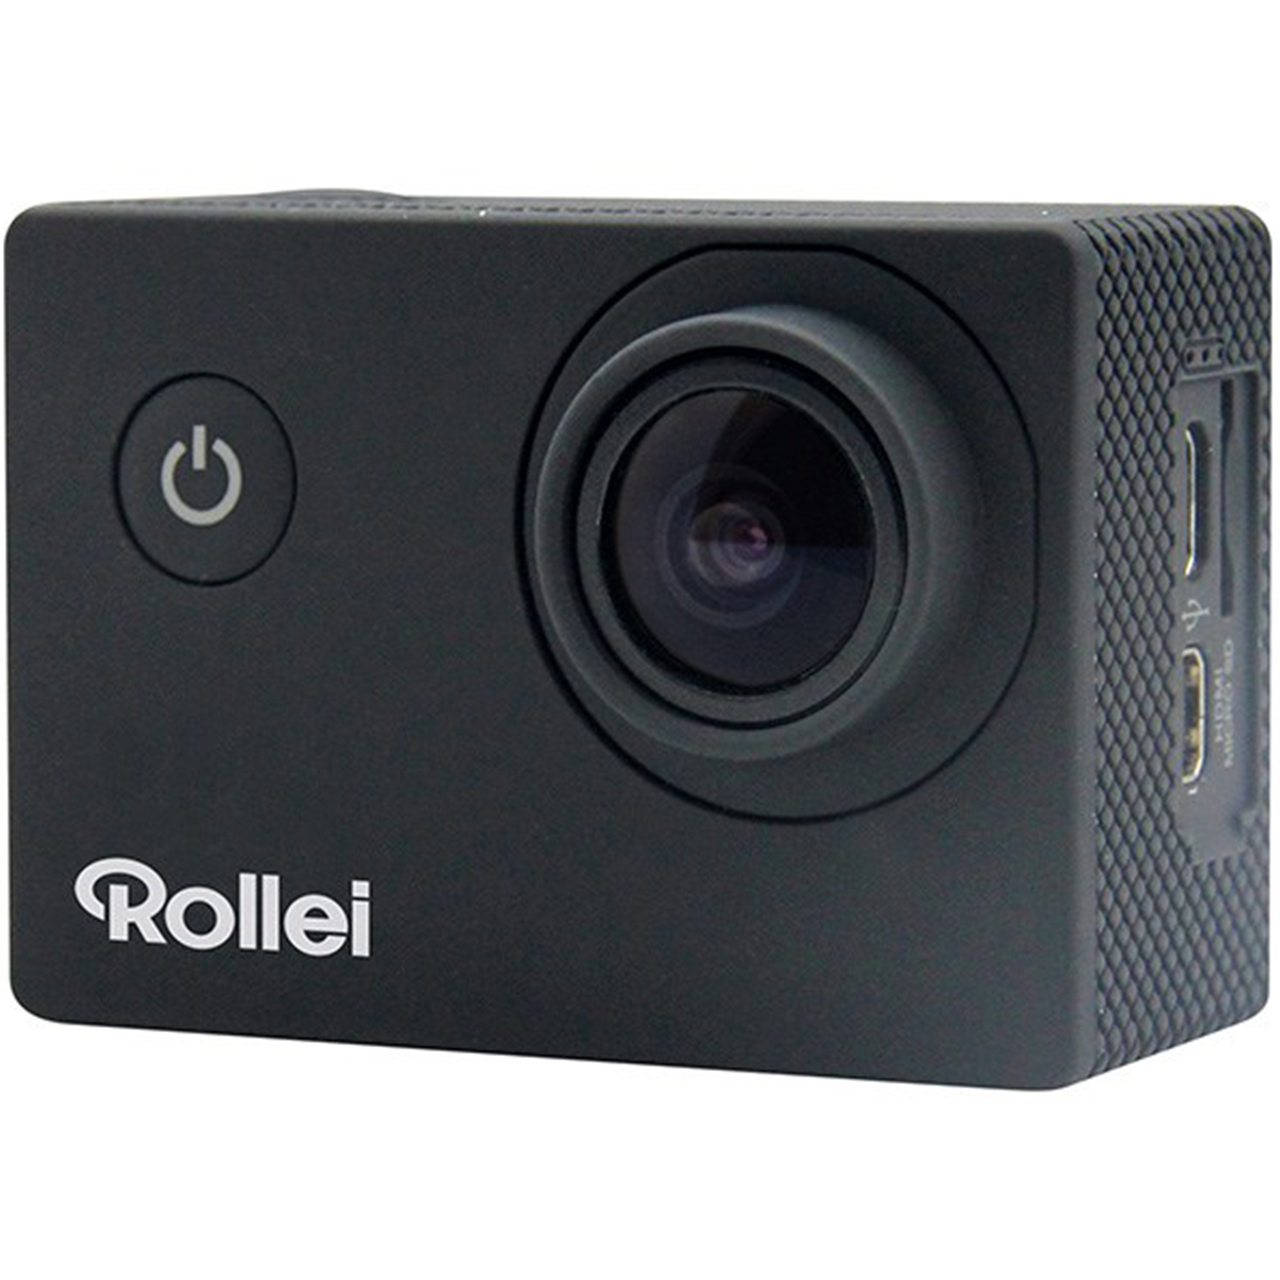 دوربین فیلمبرداری ورزشی Rollei مدل 300black